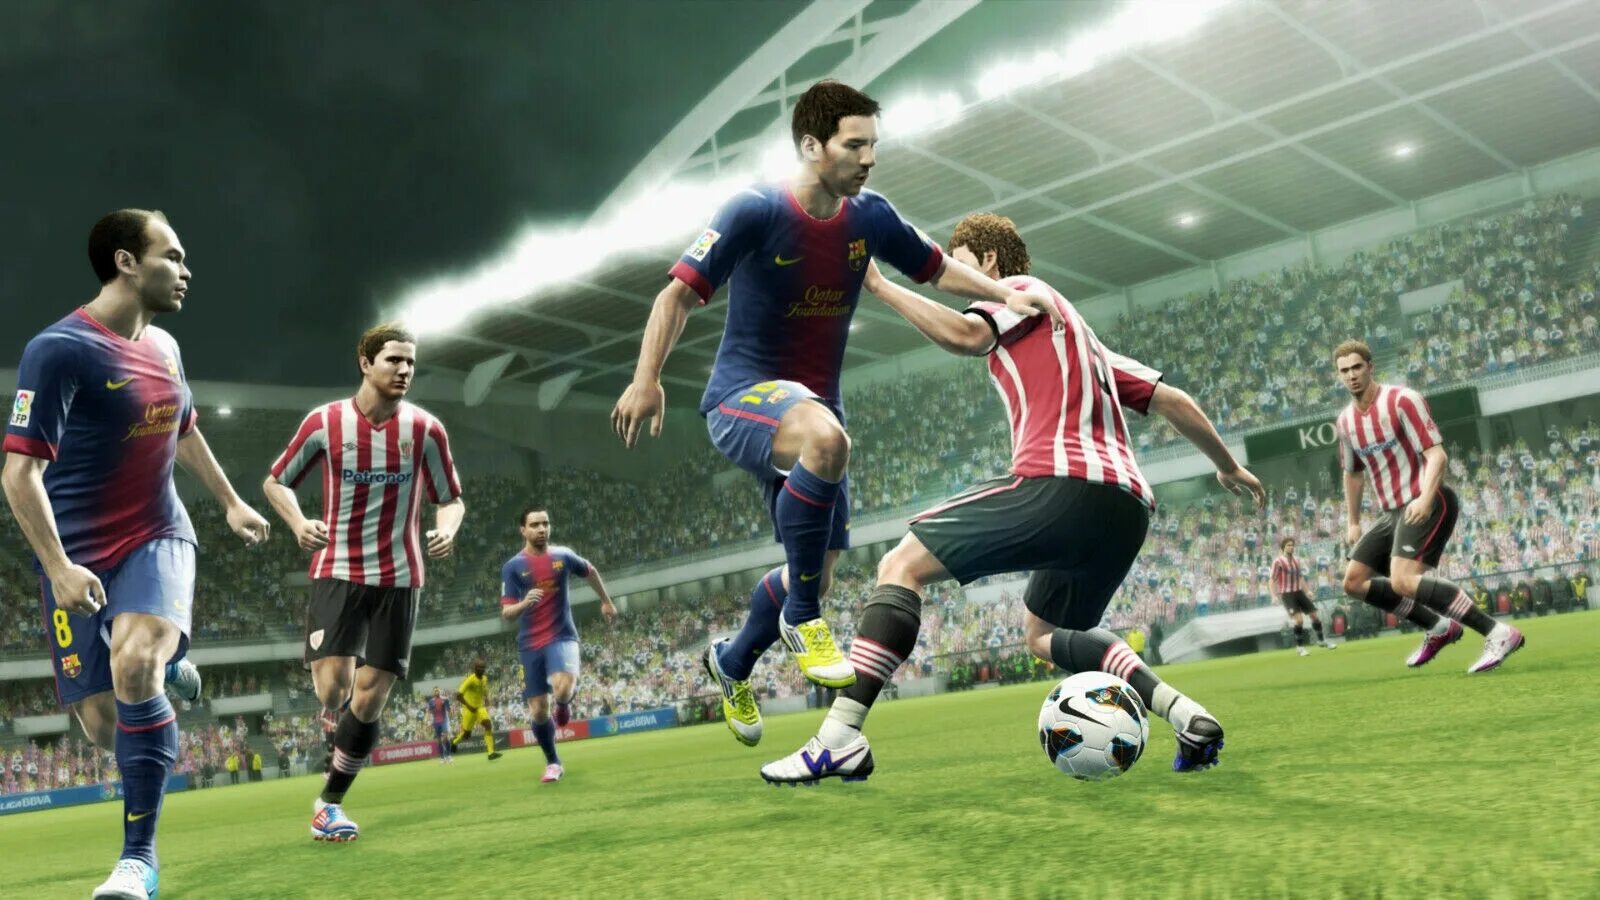 Игра Pro Evolution Soccer 2013. Pro Evolution Soccer 2013 Xbox 360. Игра футбол PES 2013. PES 2013 ПС. Играть в футбол 17